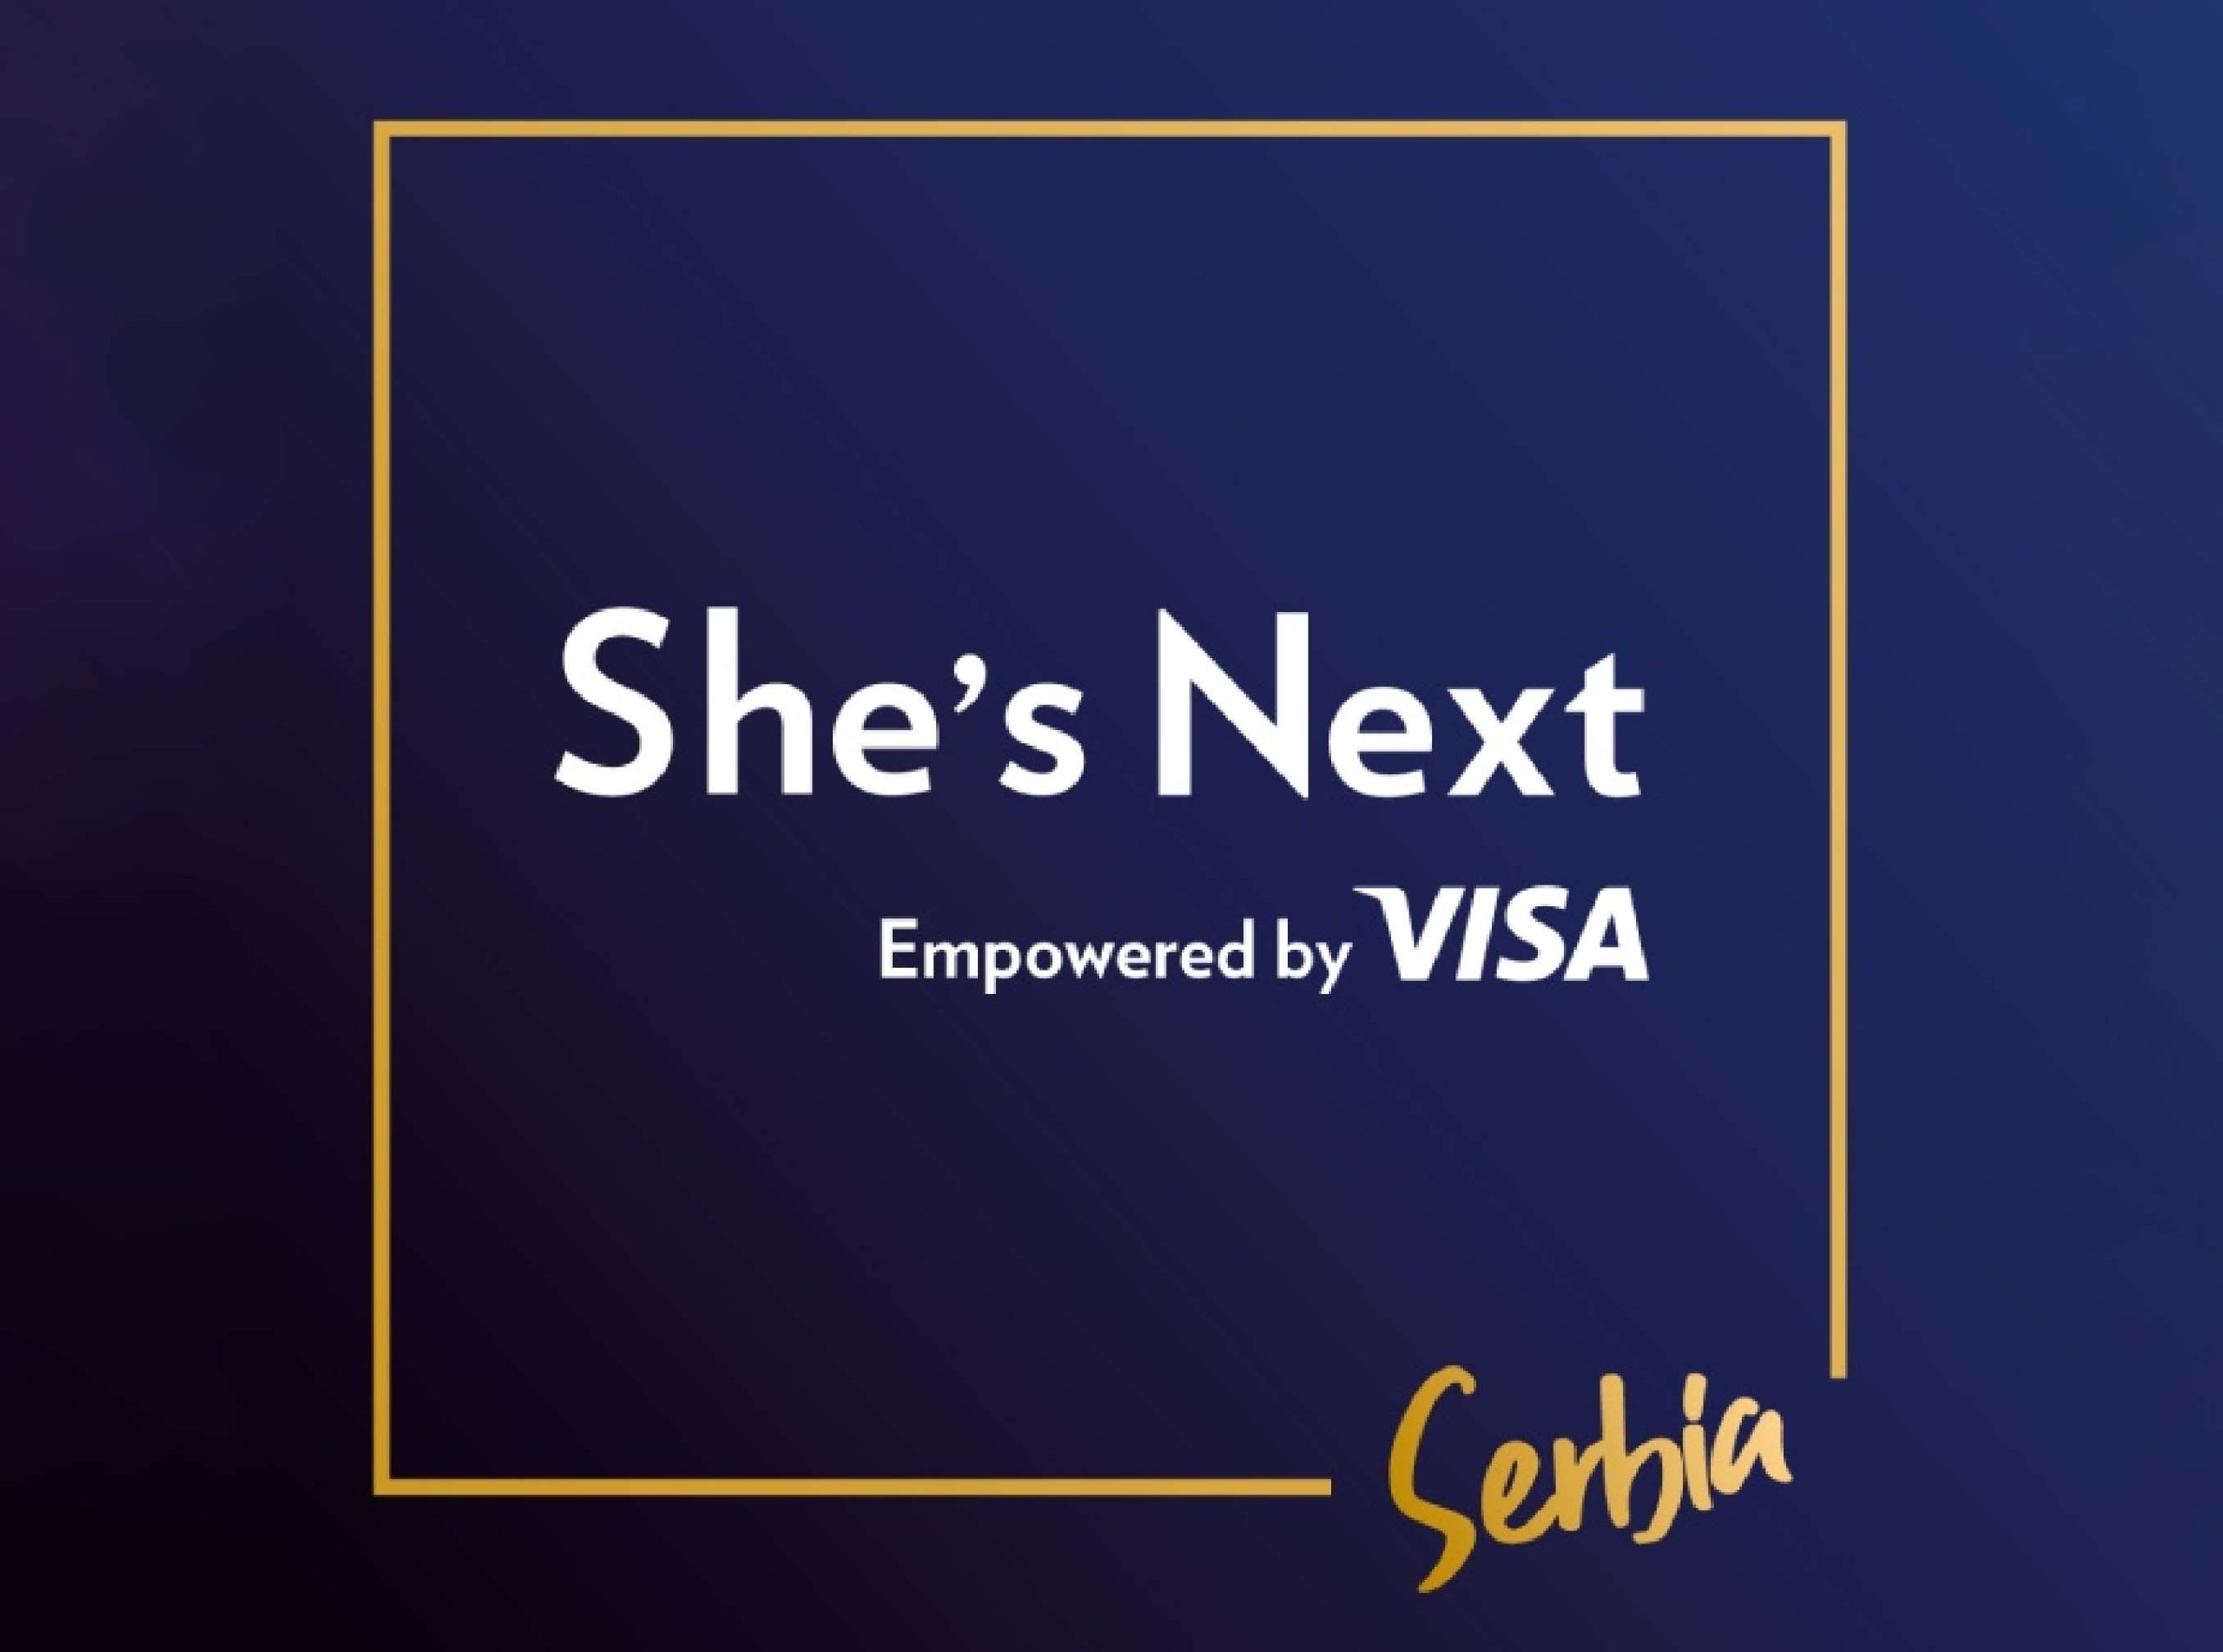 7 2 scaled Sve što je jednoj preduzetnici potrebno jeste da postane deo She’s Next Visa zajednice